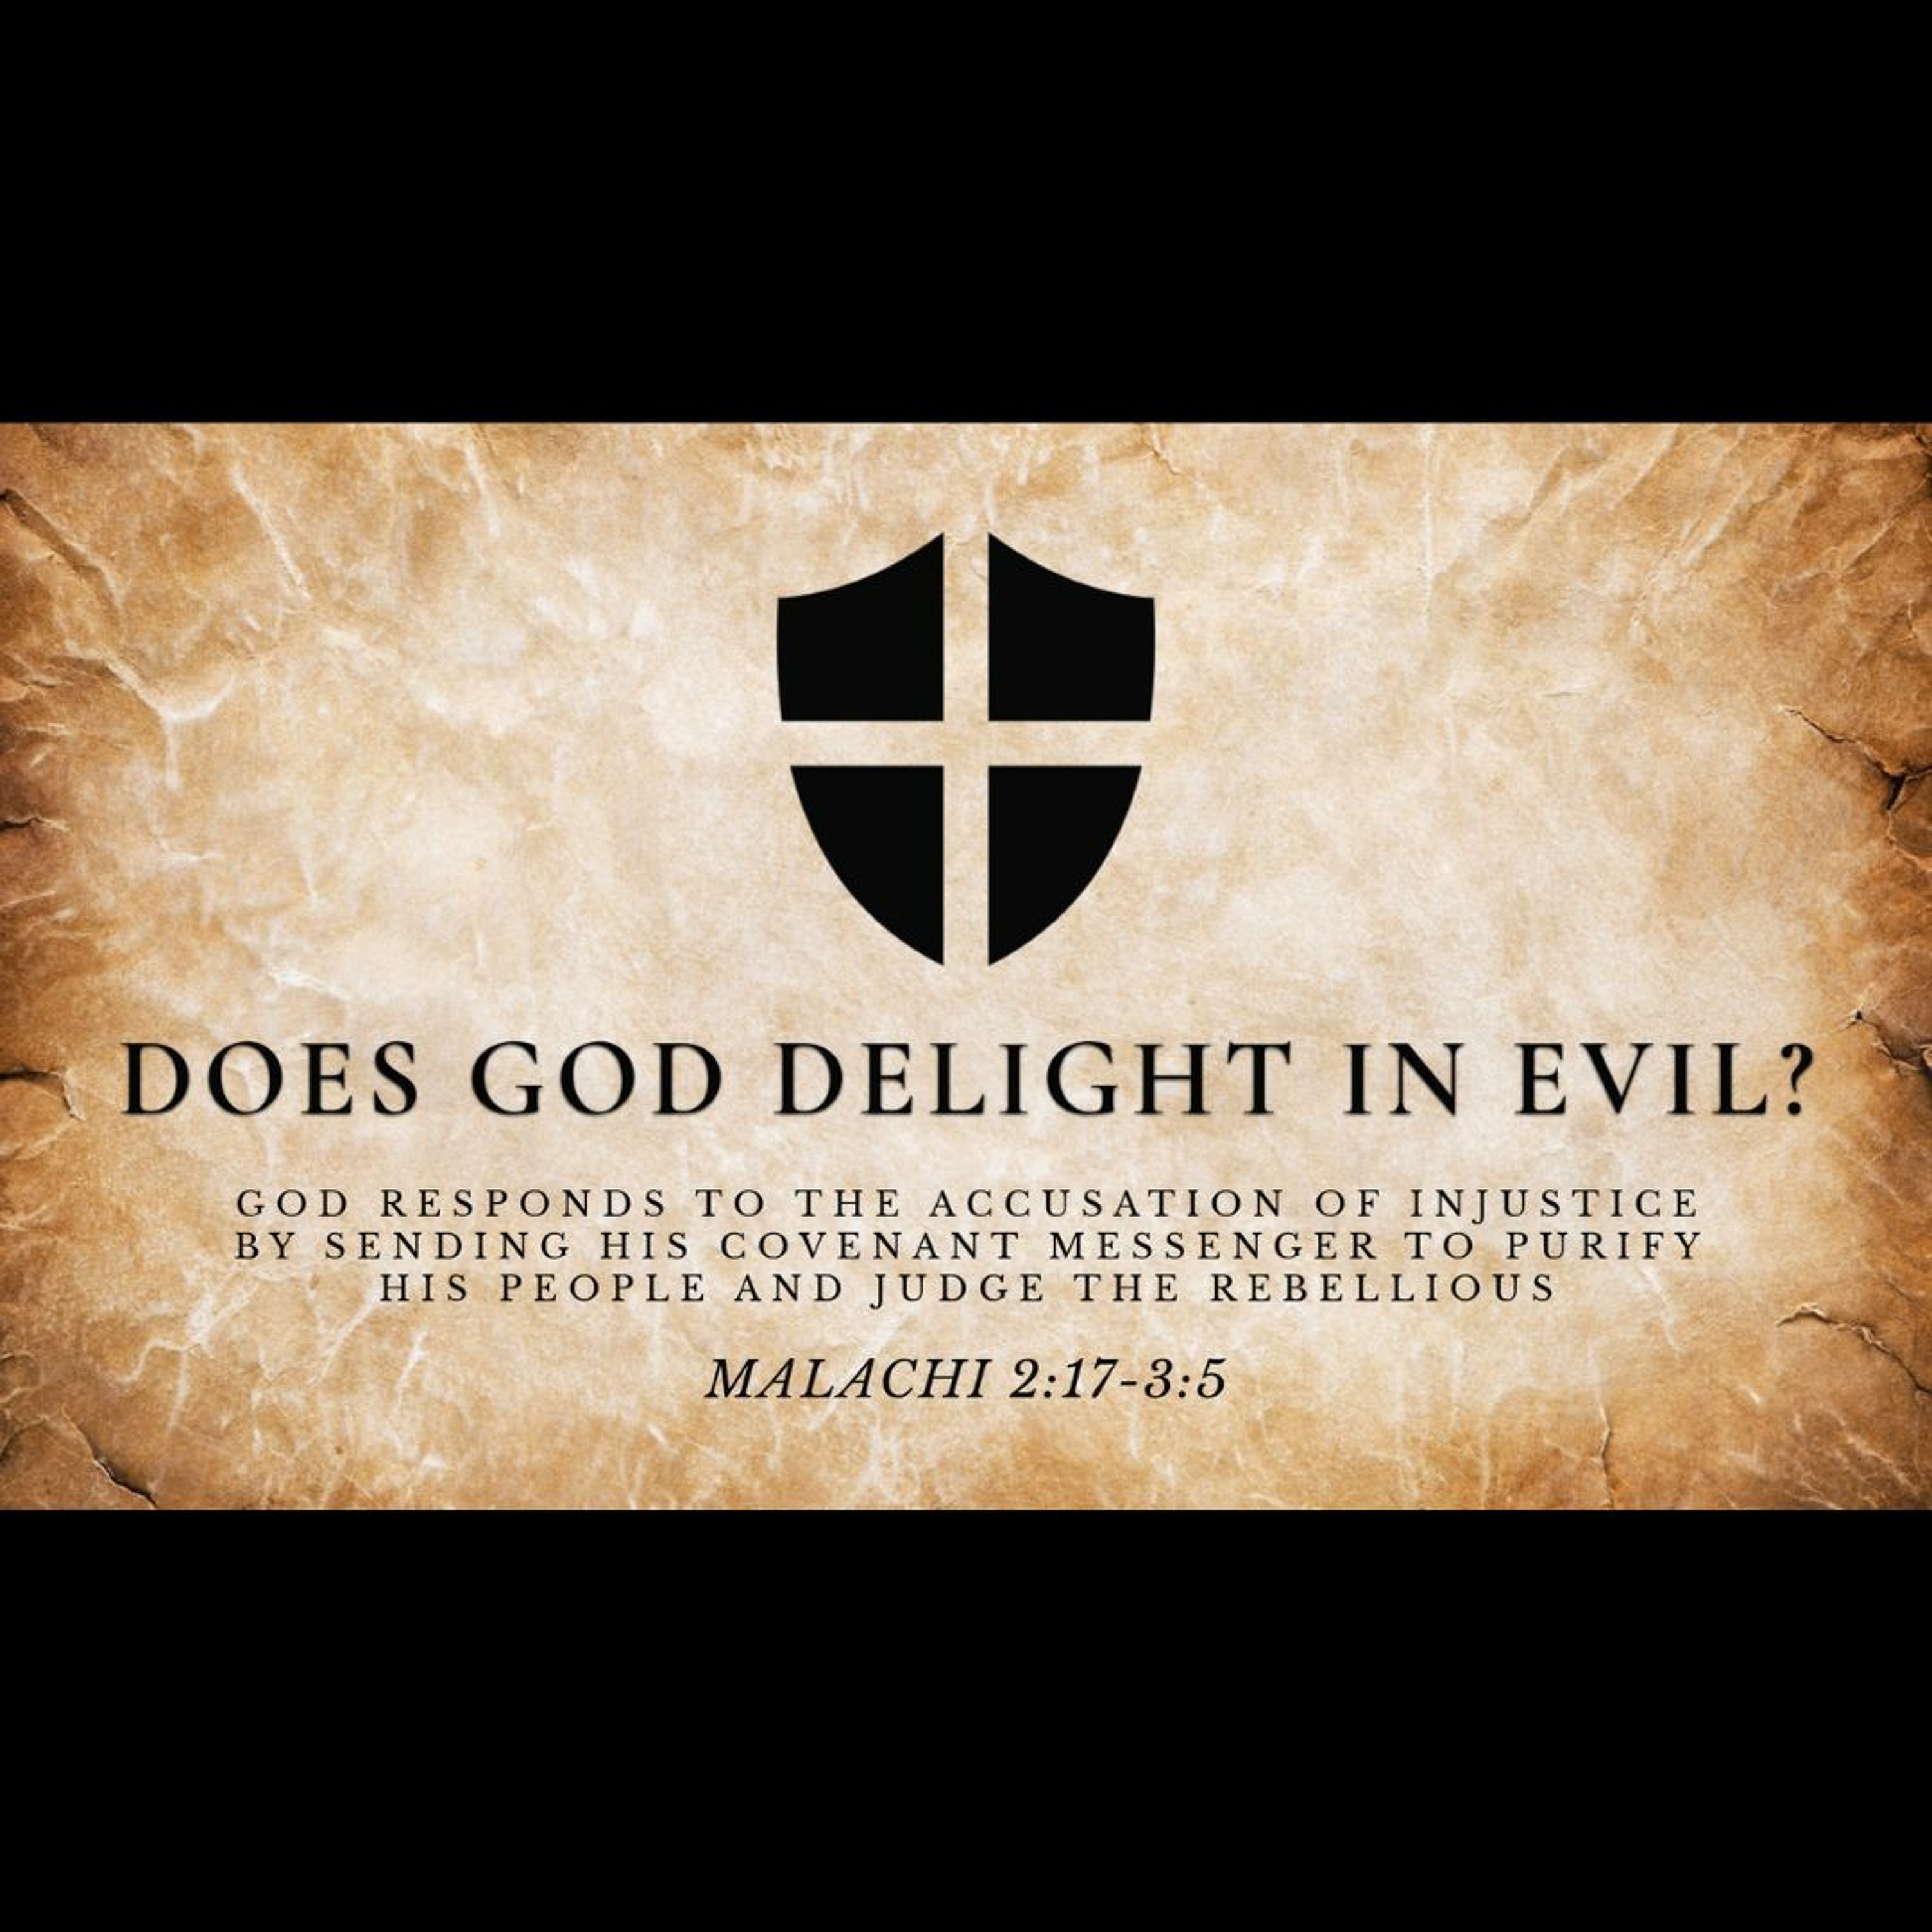 Does God Delight in Evil?(Malachi 2:17-3:5)